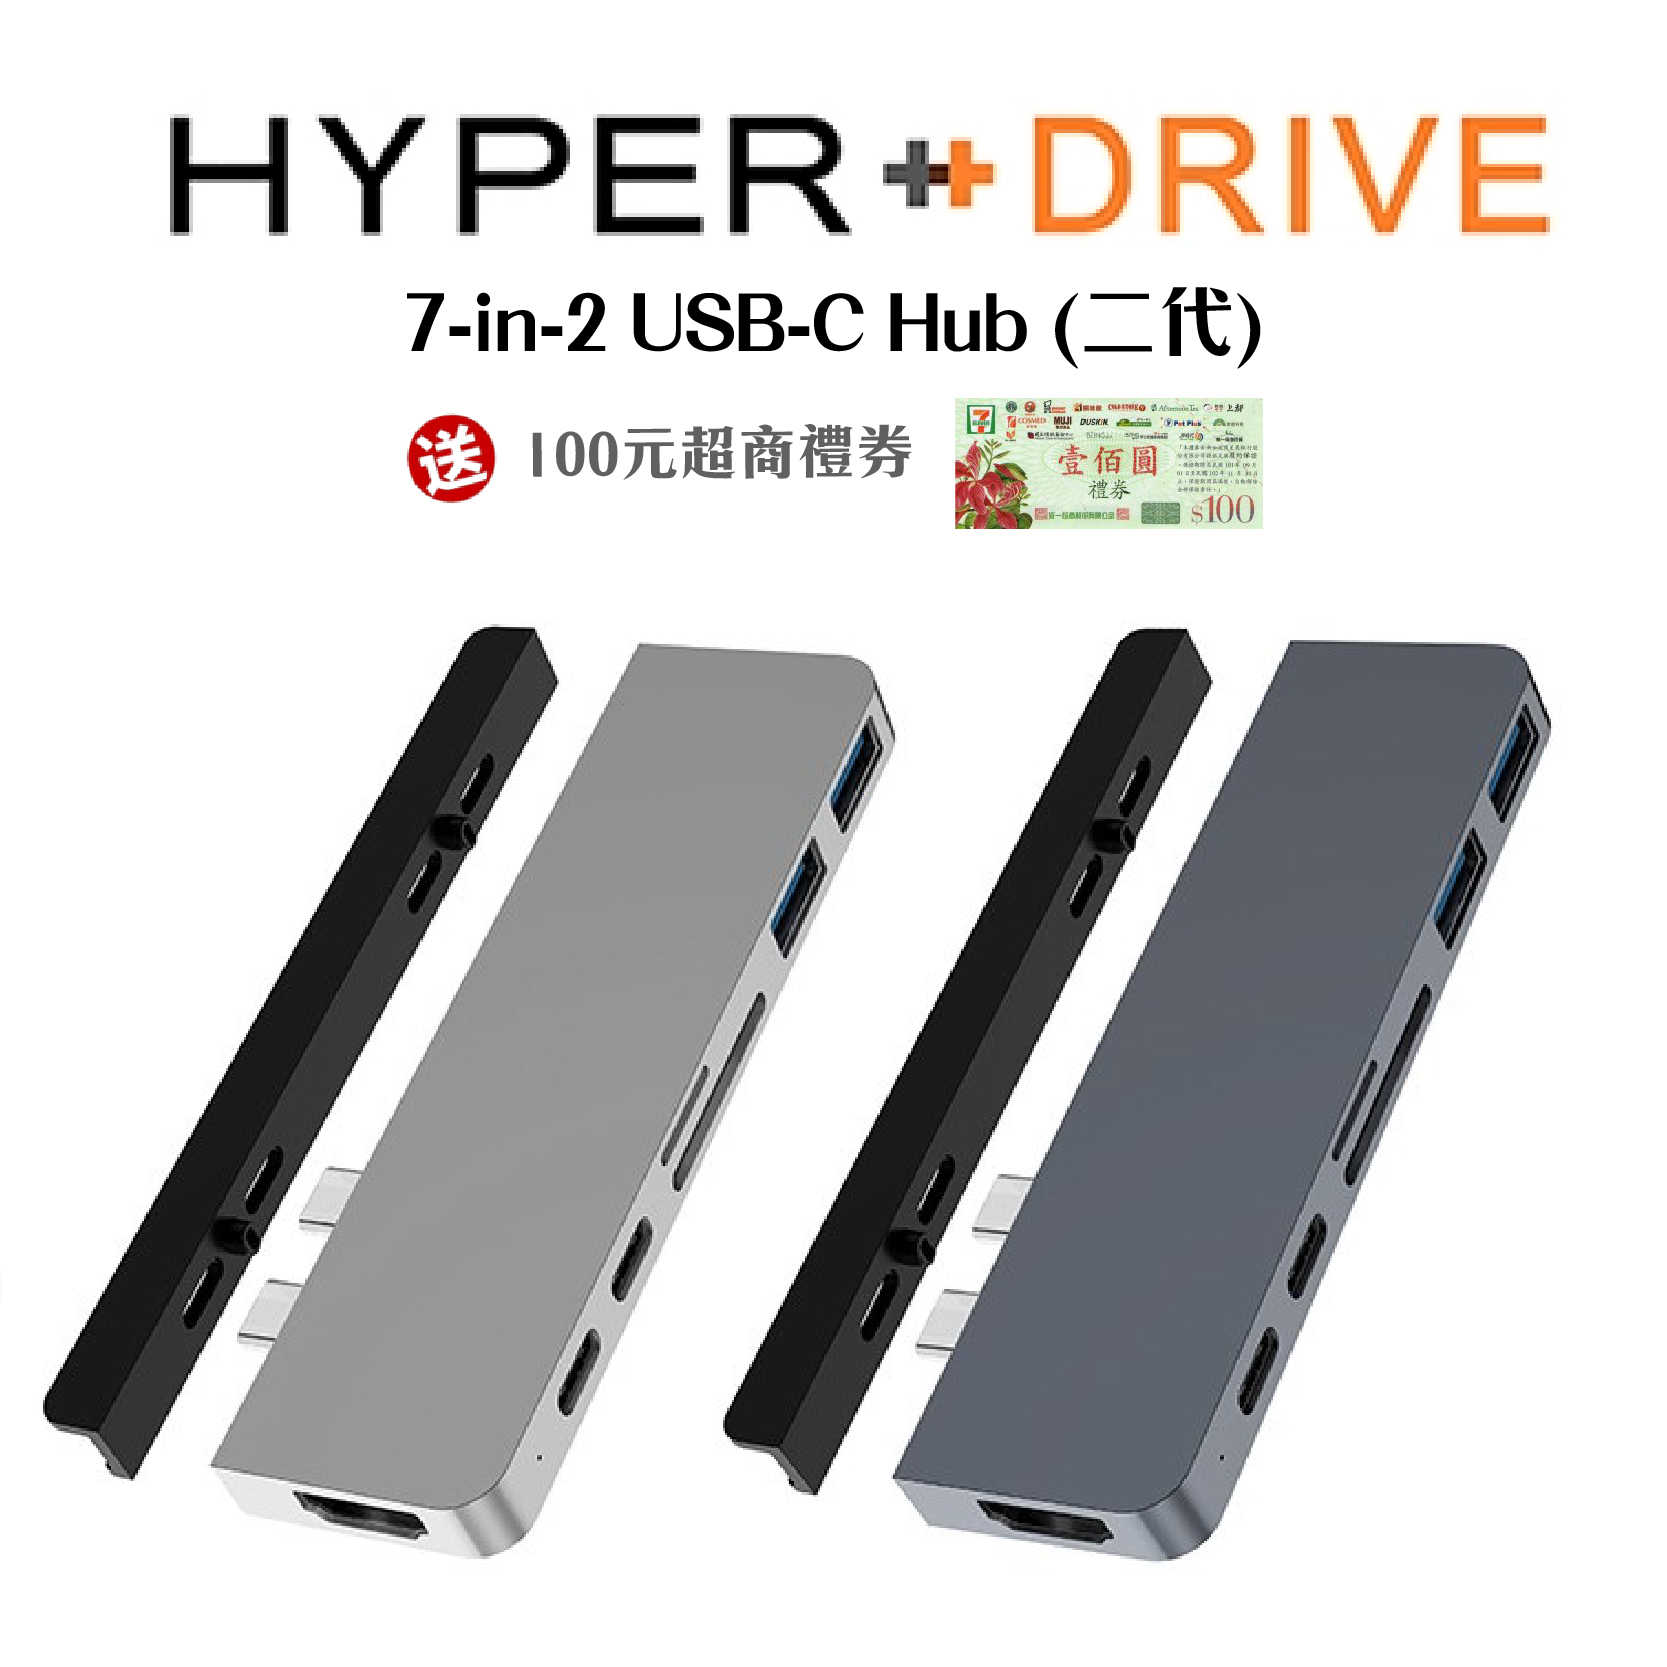 送100元禮券『HyperDrive 7-in-2 USB-C Hub (二代)』多功能集線器